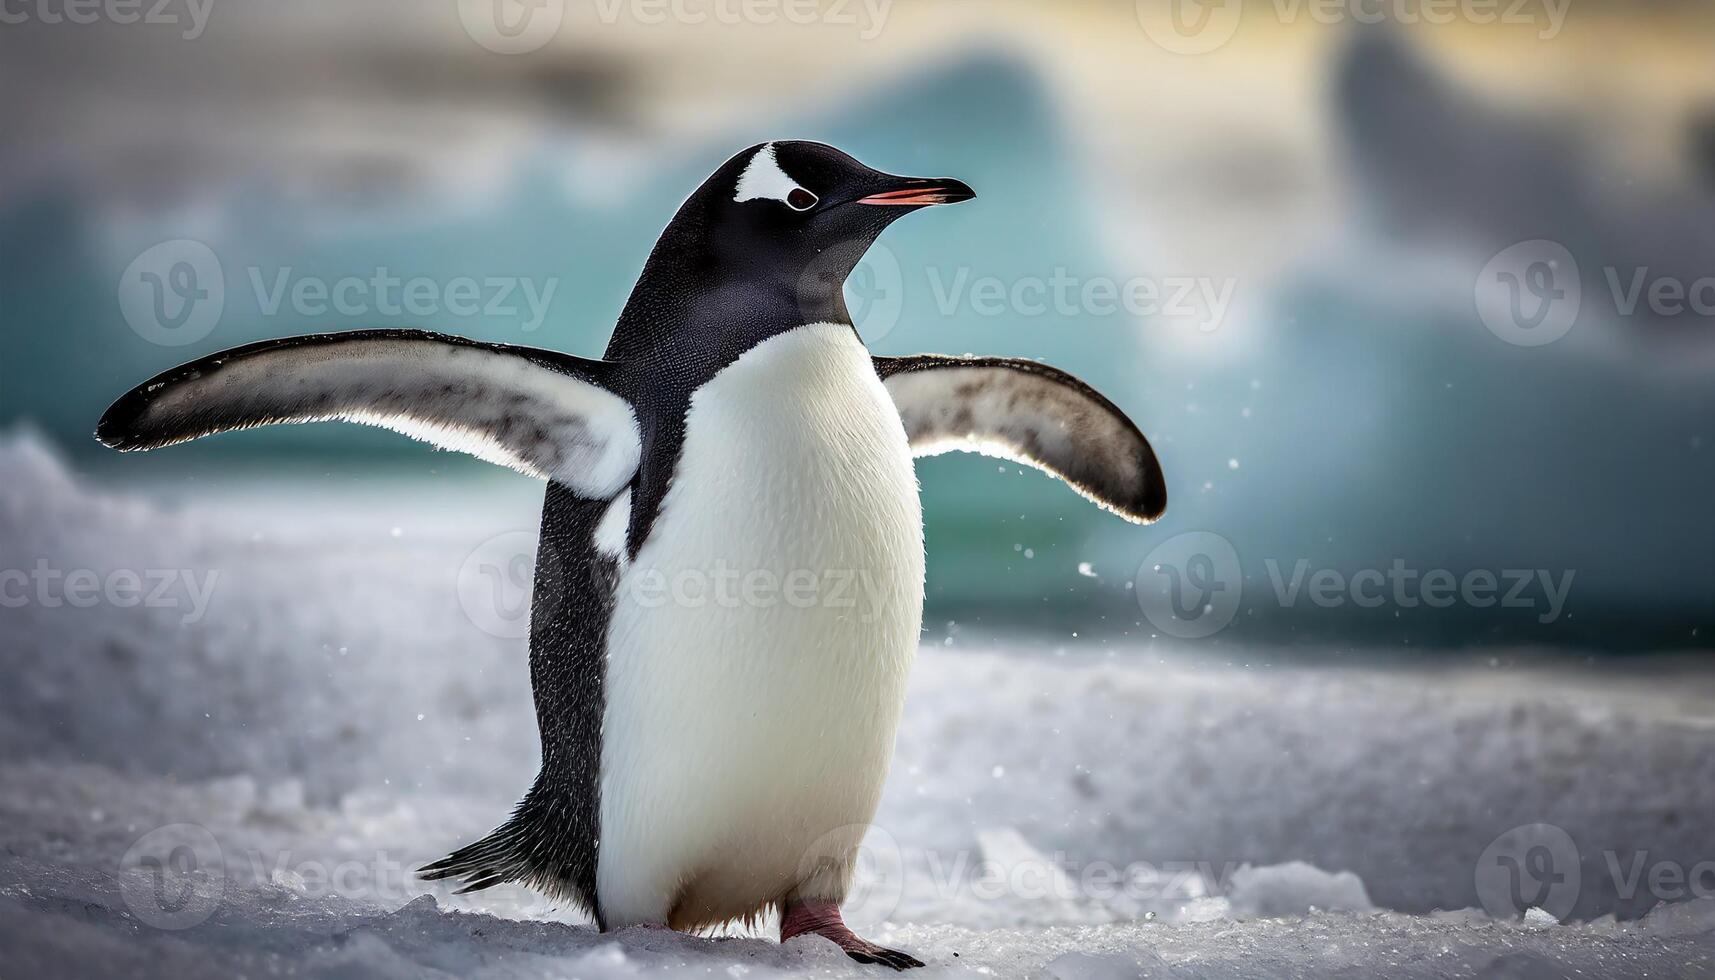 gentoo pingvin kör över de kust. falkland öar, söder atlanten hav, brittiskt utomlands territorium foto